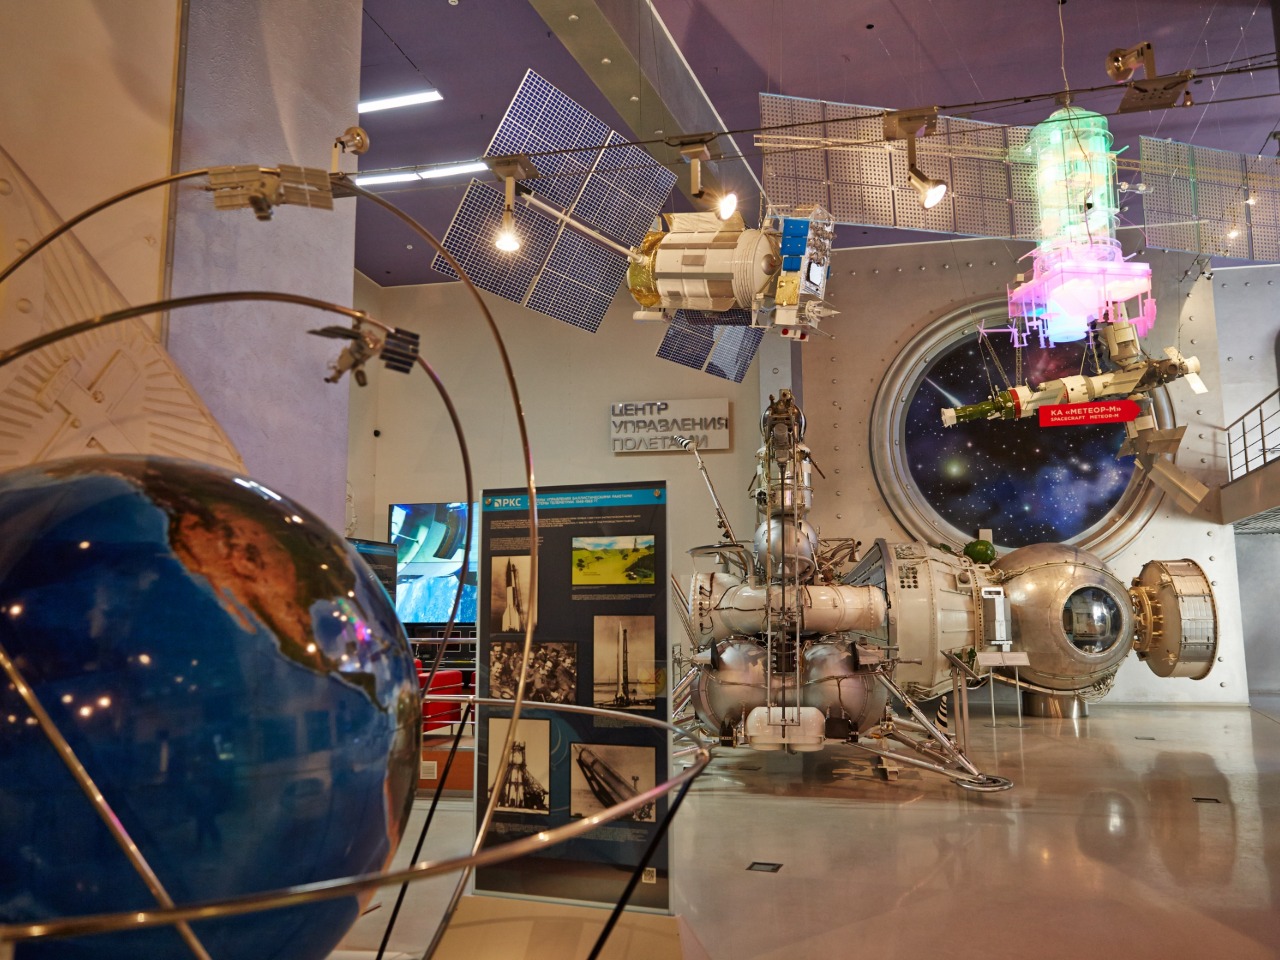 Космическое путешествие по Музею космонавтики | Цена 5350₽, отзывы, описание экскурсии